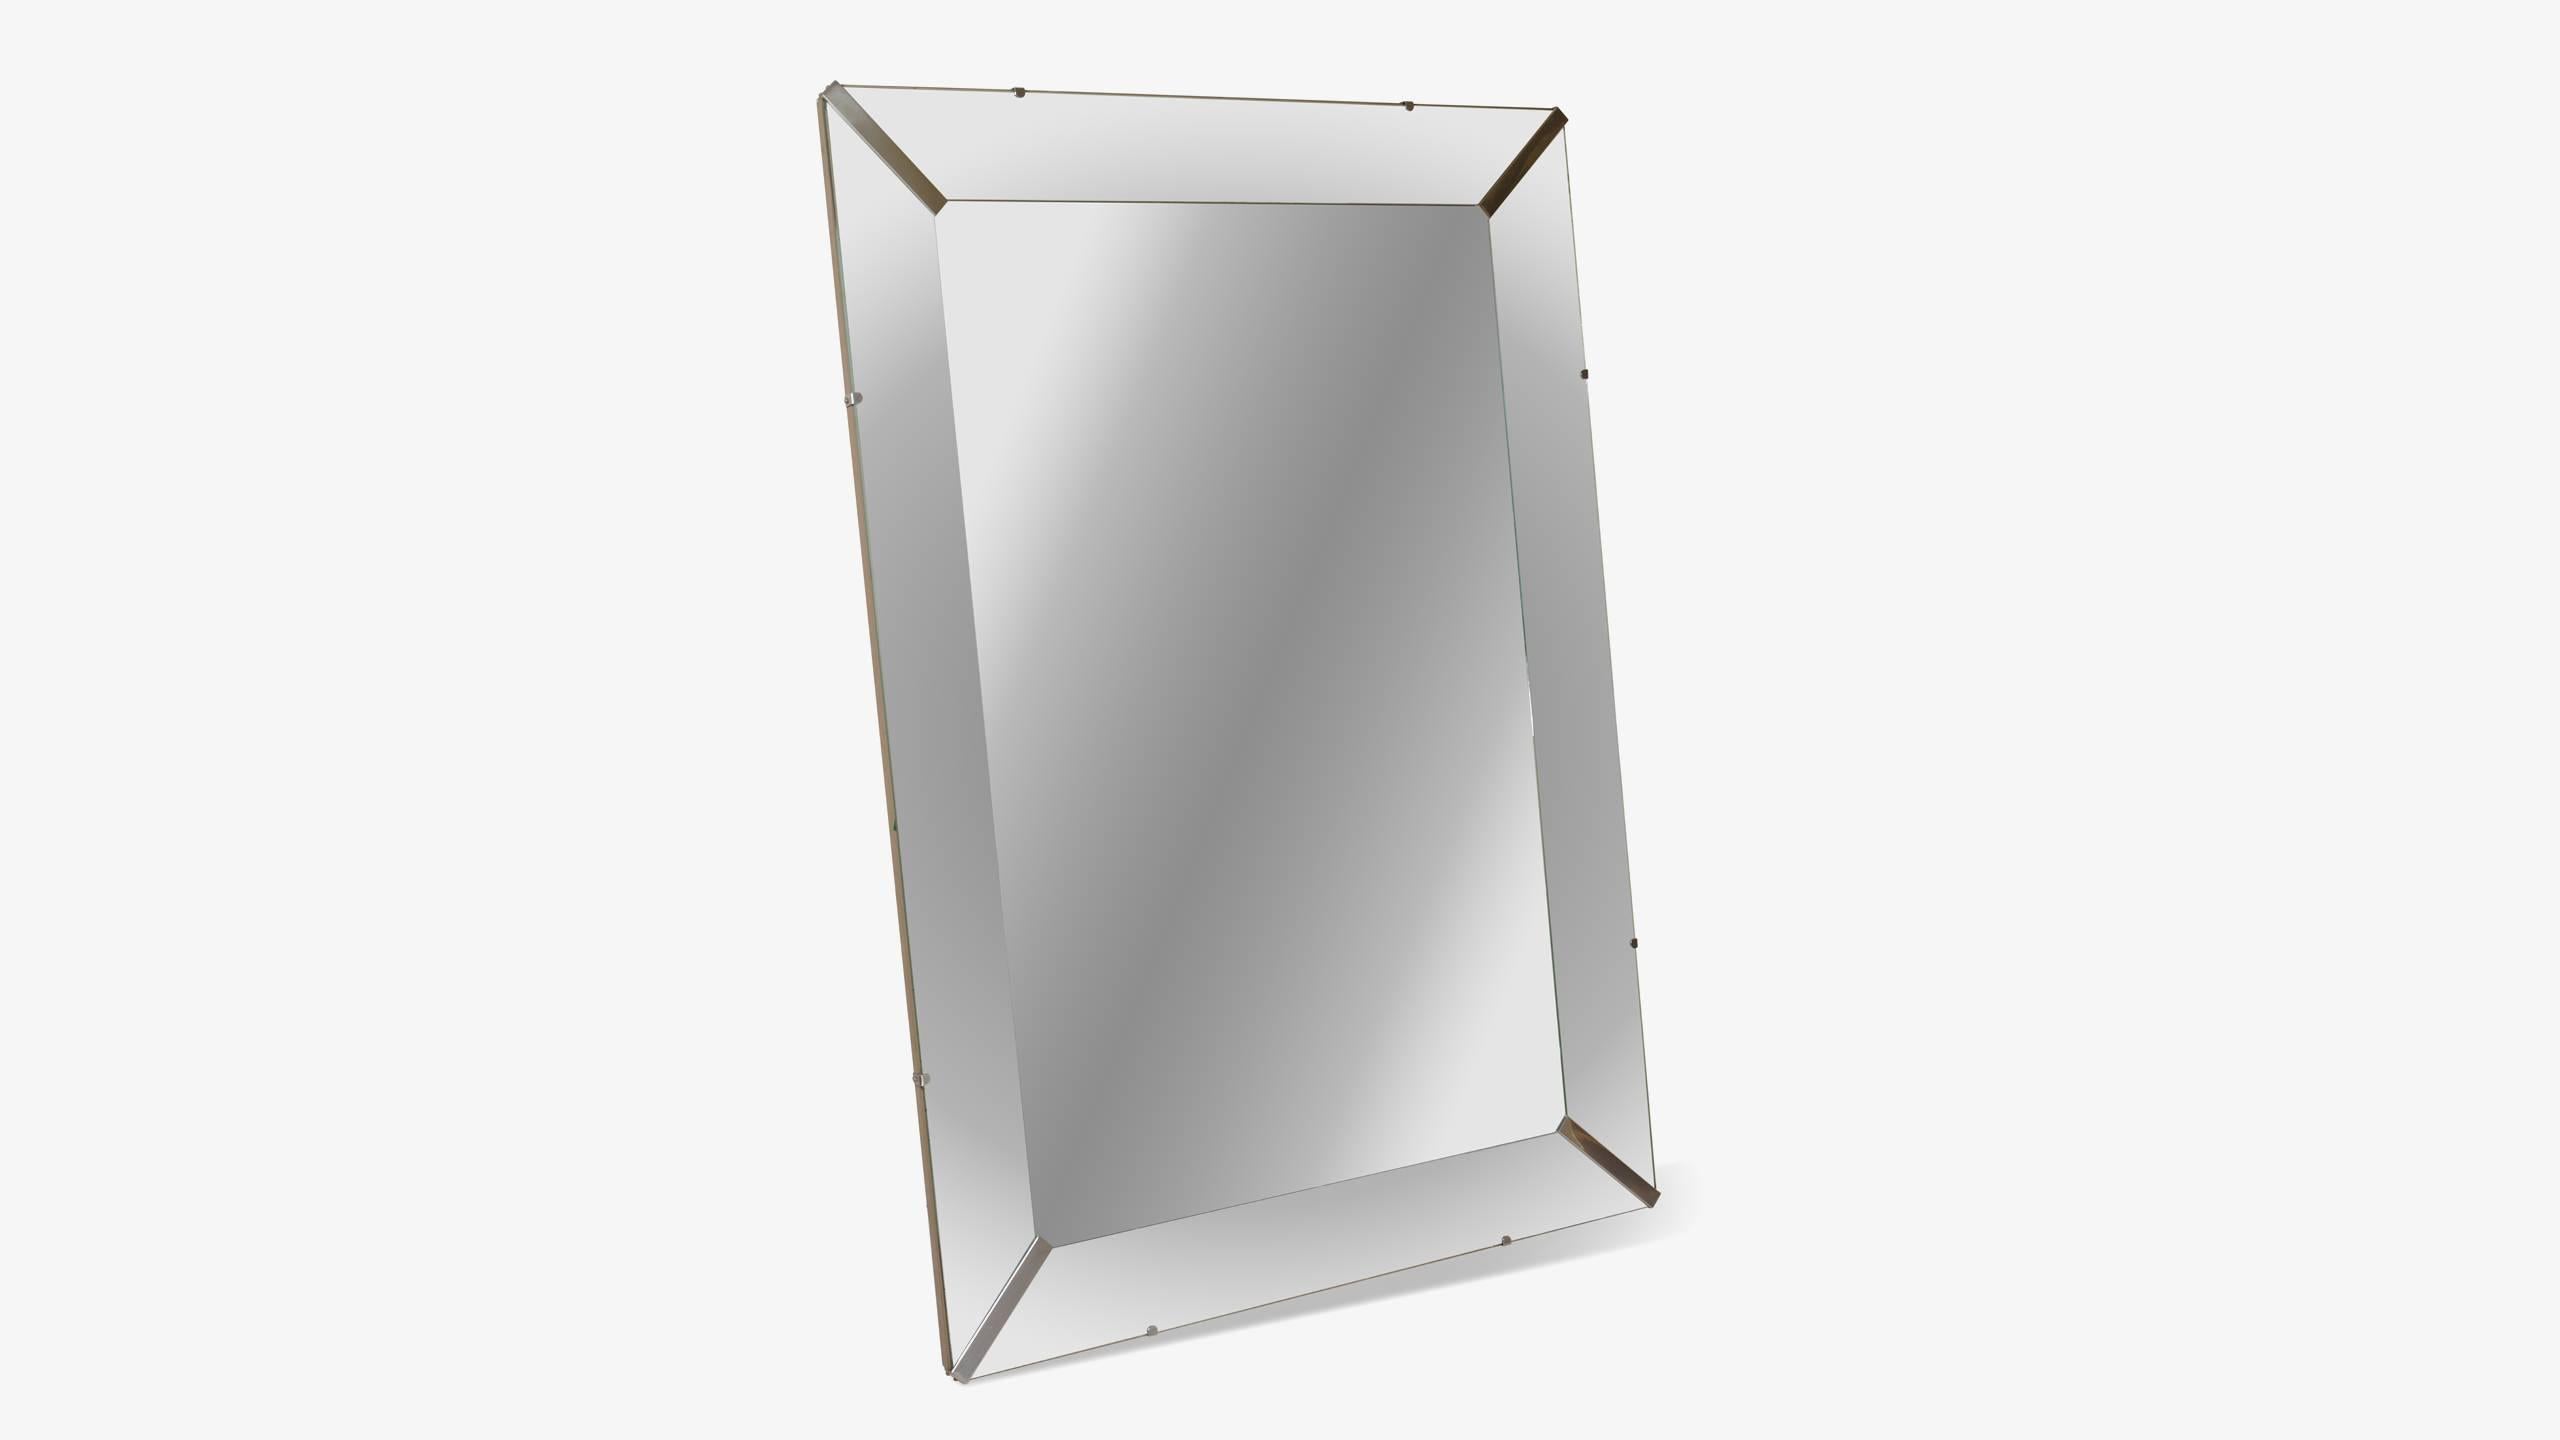 Ein zeitloses Design in überdimensionaler Größe. Dieser eindrucksvoll proportionierte Spiegel ist eine wunderbare Ergänzung für ein großes Foyer oder ein Esszimmer. Da dieser Spiegel sowohl im Hoch- als auch im Querformat an der Wand montiert werden